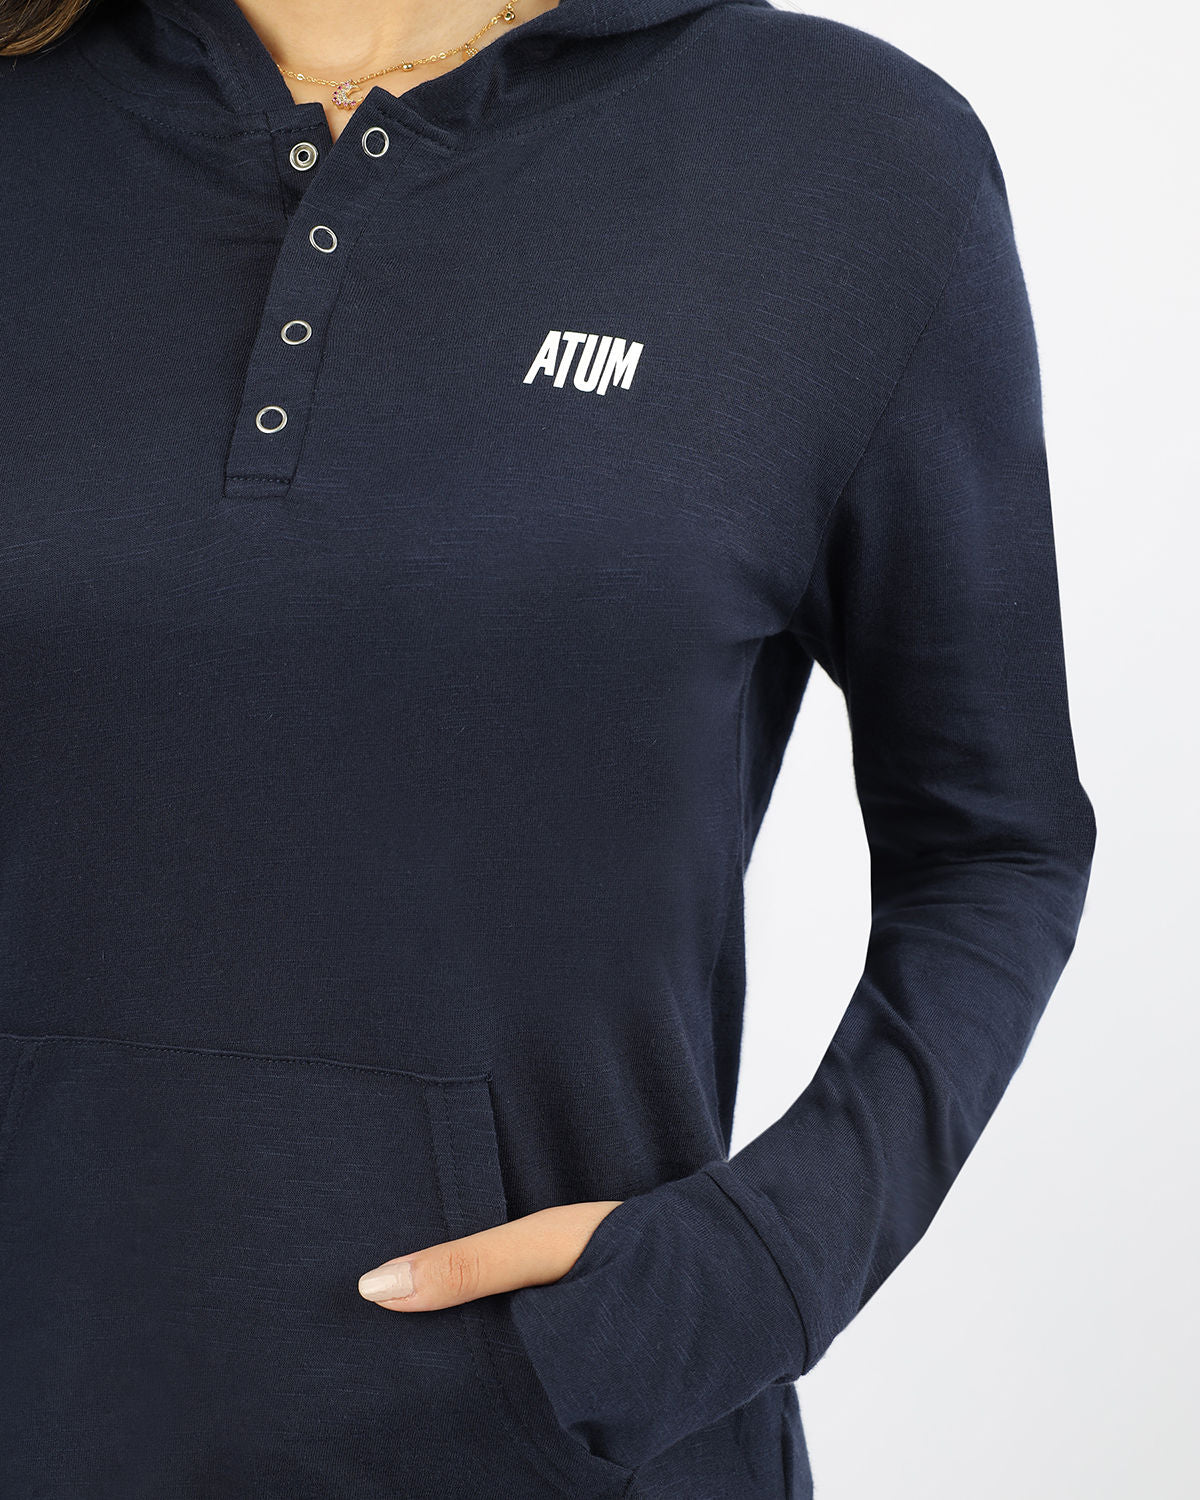 Atum Women's Basic Hooded T-shirt